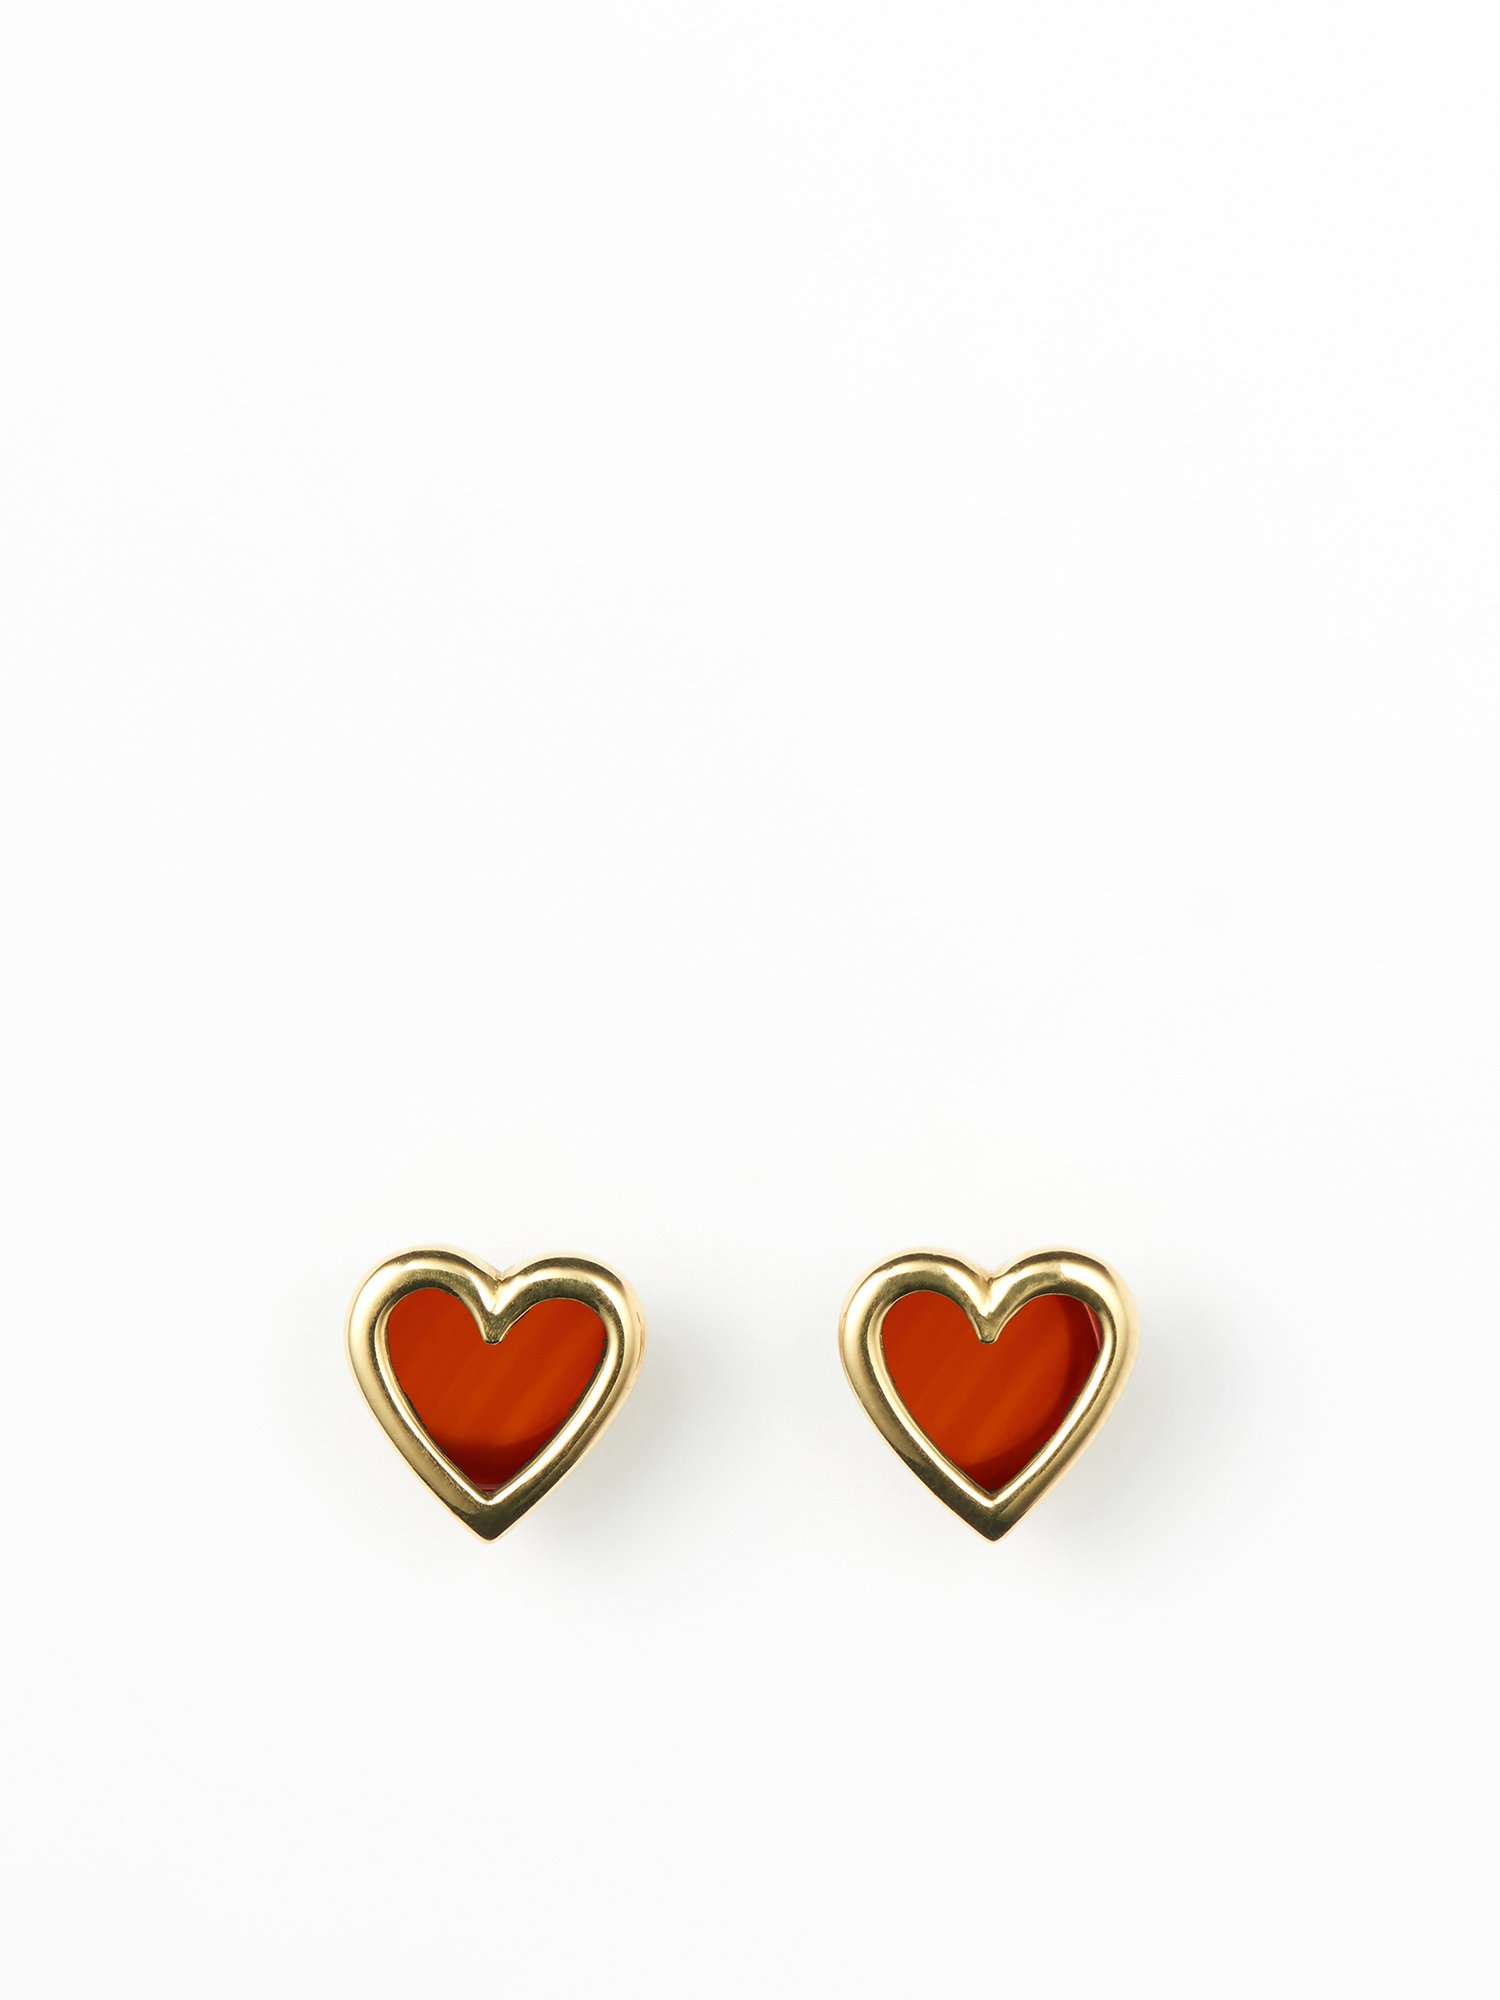  SOPHISTICATED VINTAGE / Vis stone earrings (heart) / Carnelian